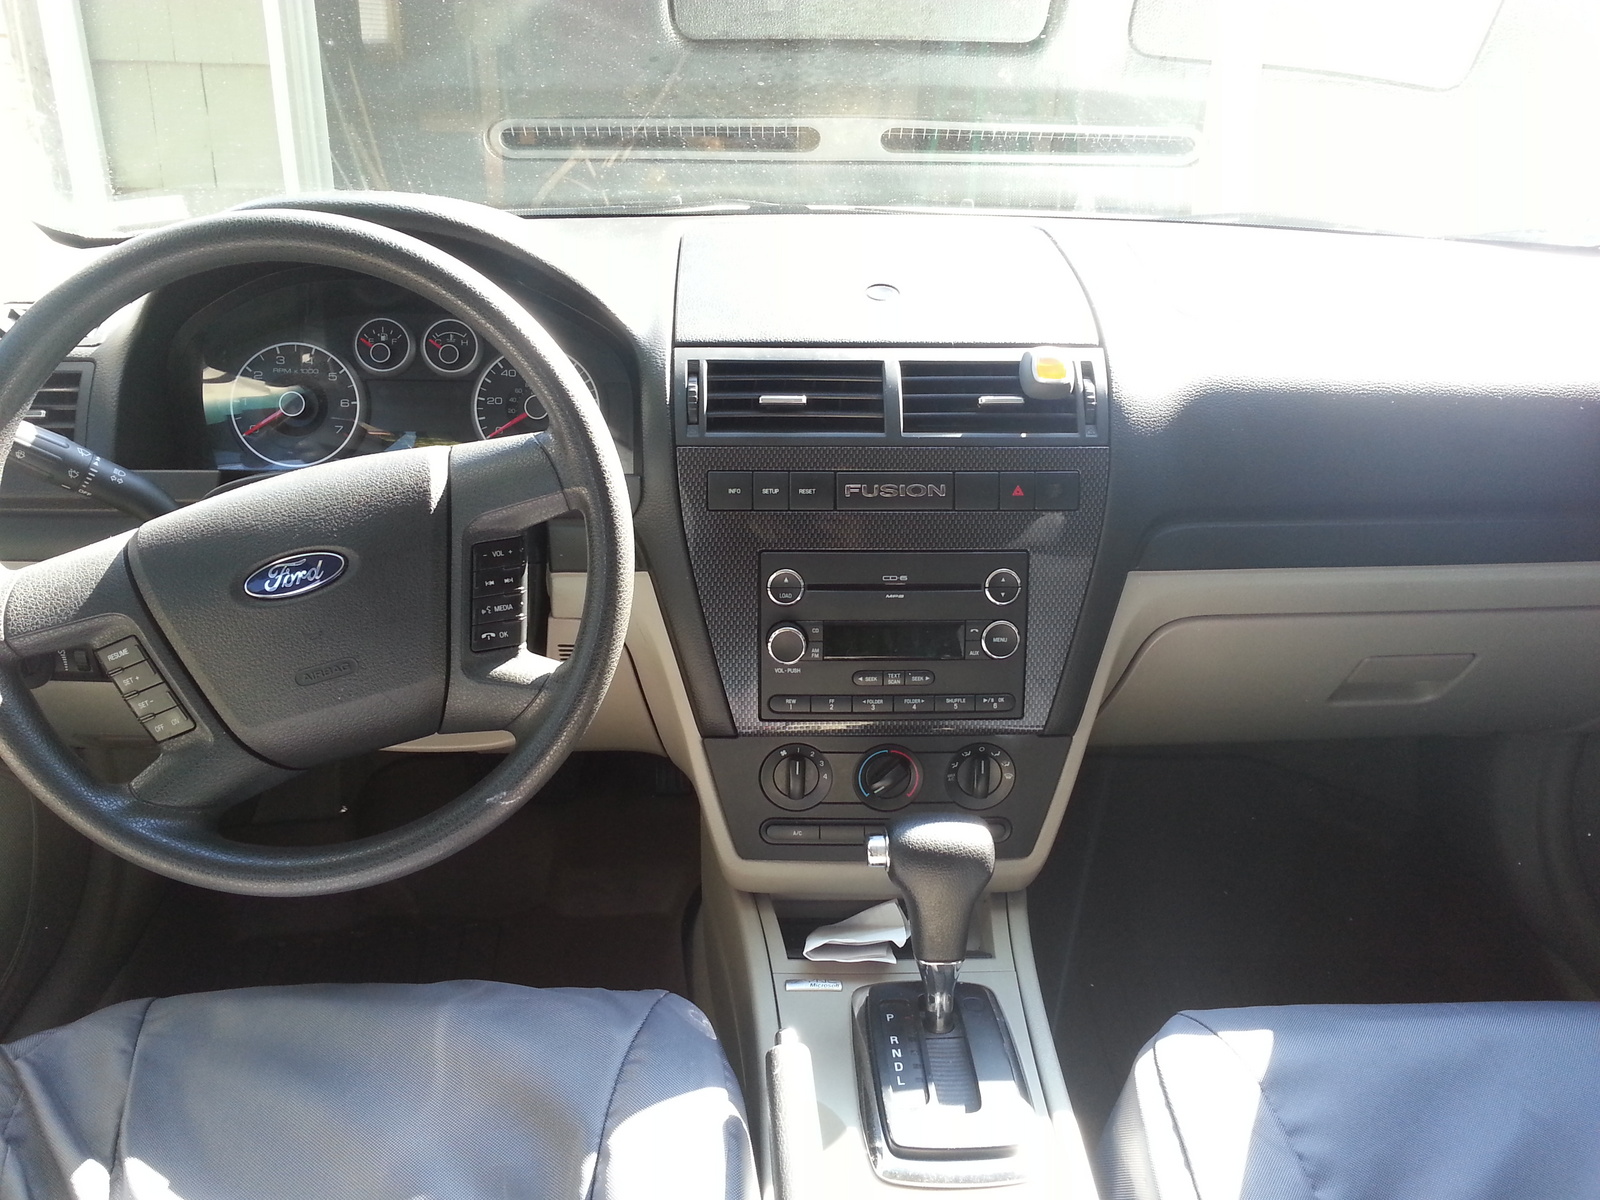 2008 Ford fusion interior dimensions #6